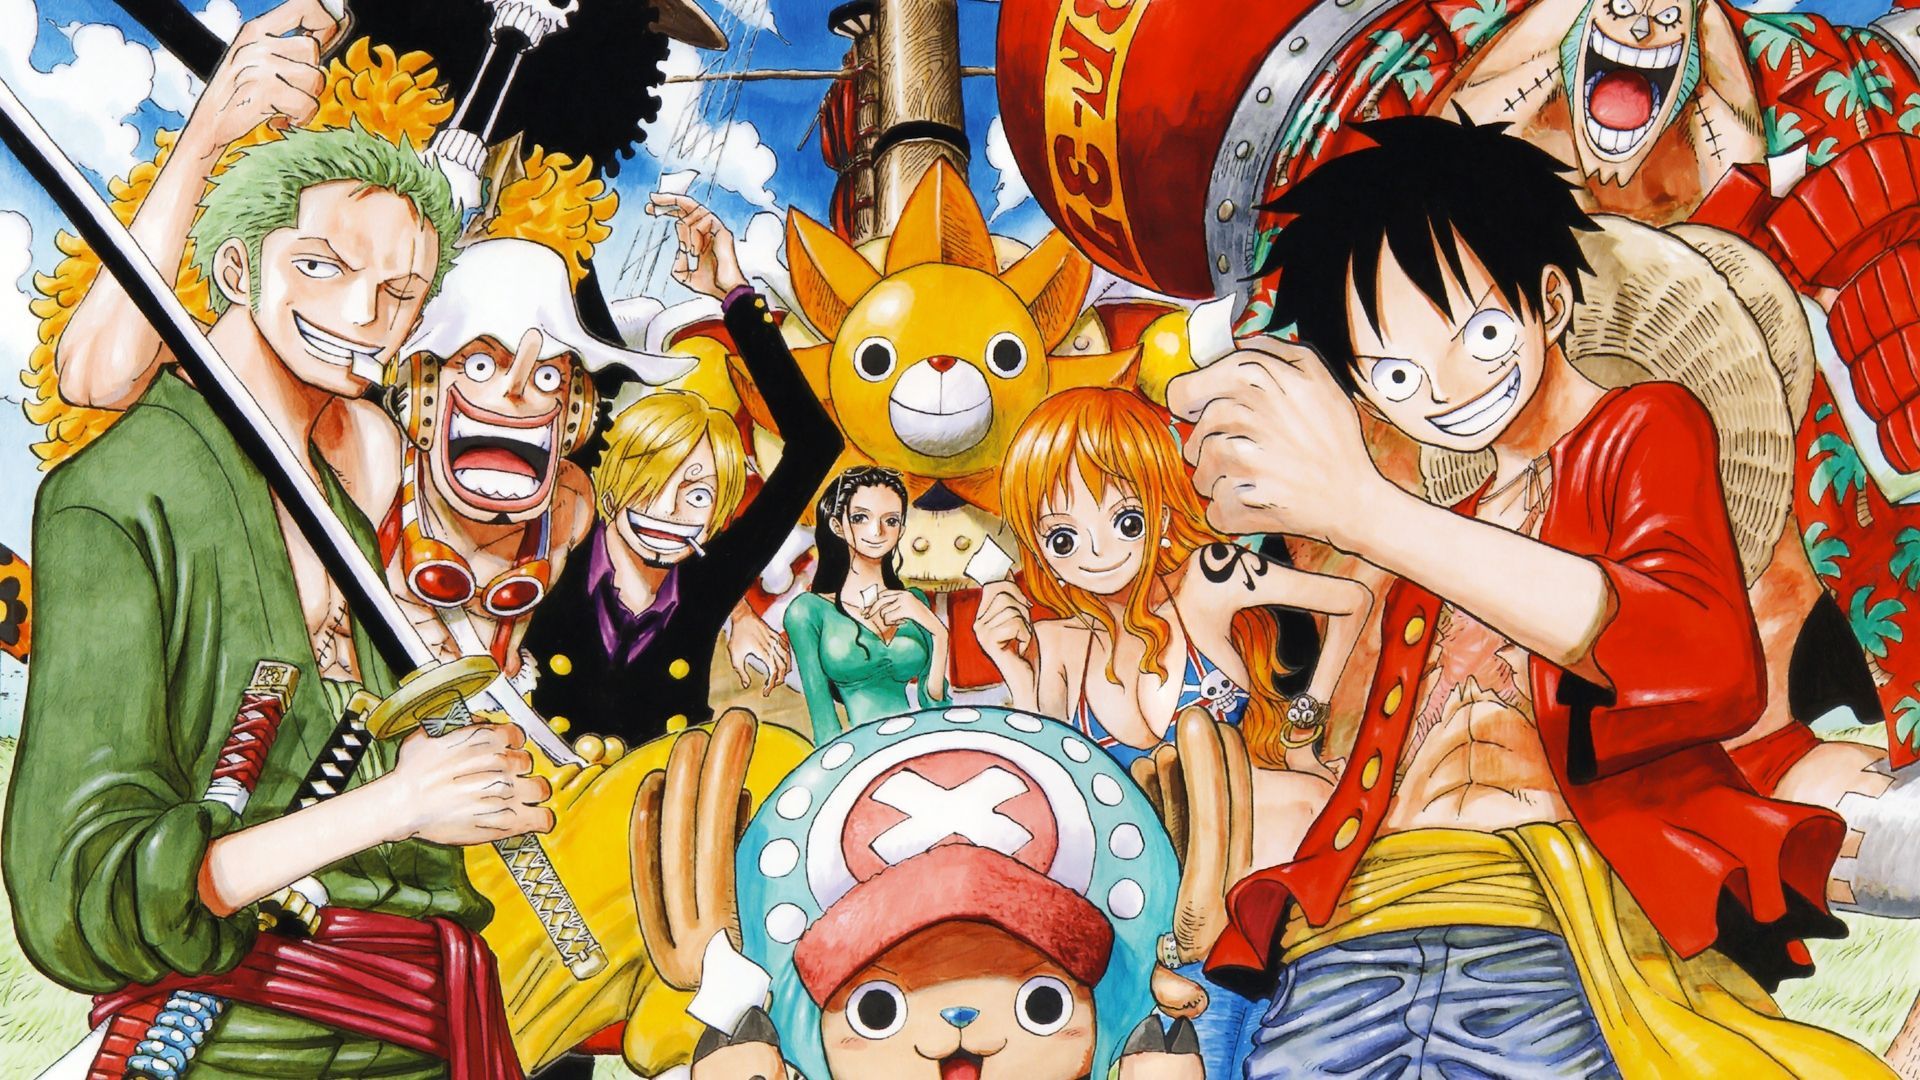 Fondos de One Piece - Los mejores fondos de One Piece gratis - WallpaperAccess